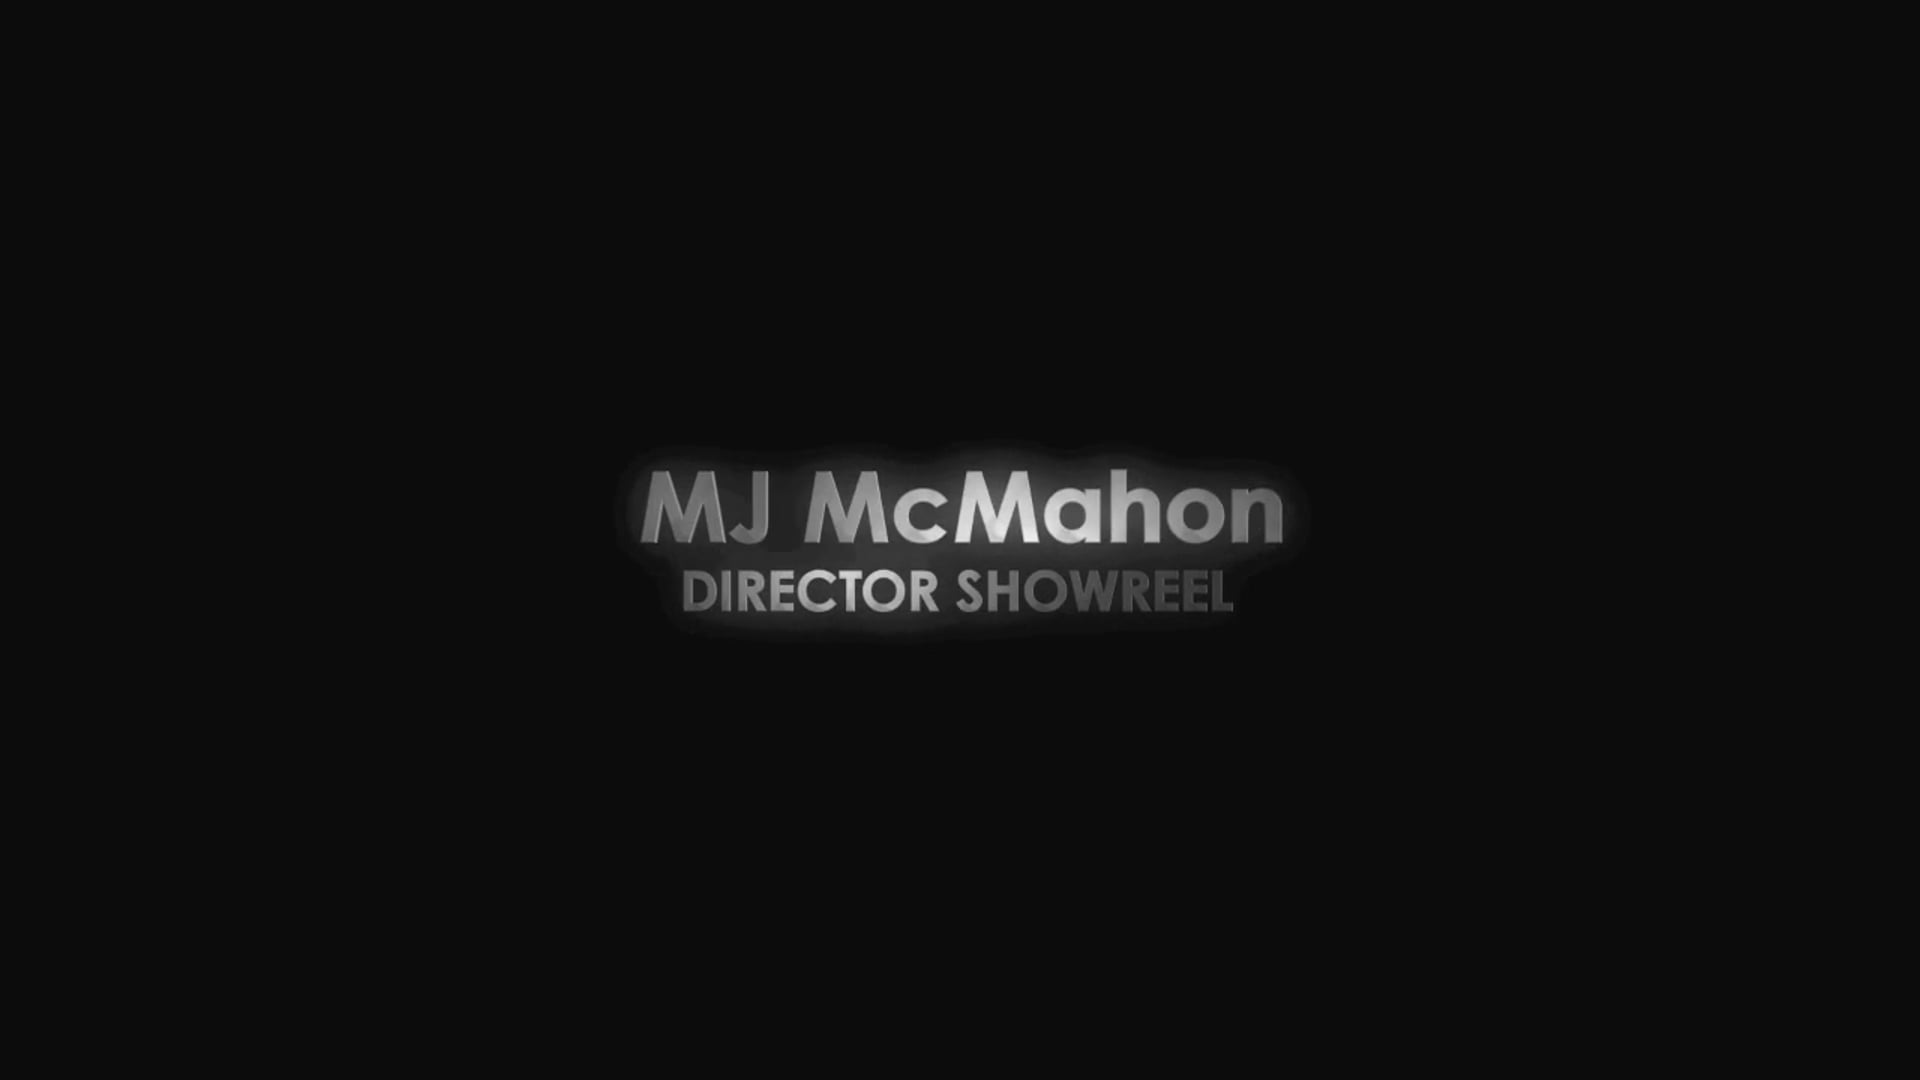 MJ McMahon's Showreel